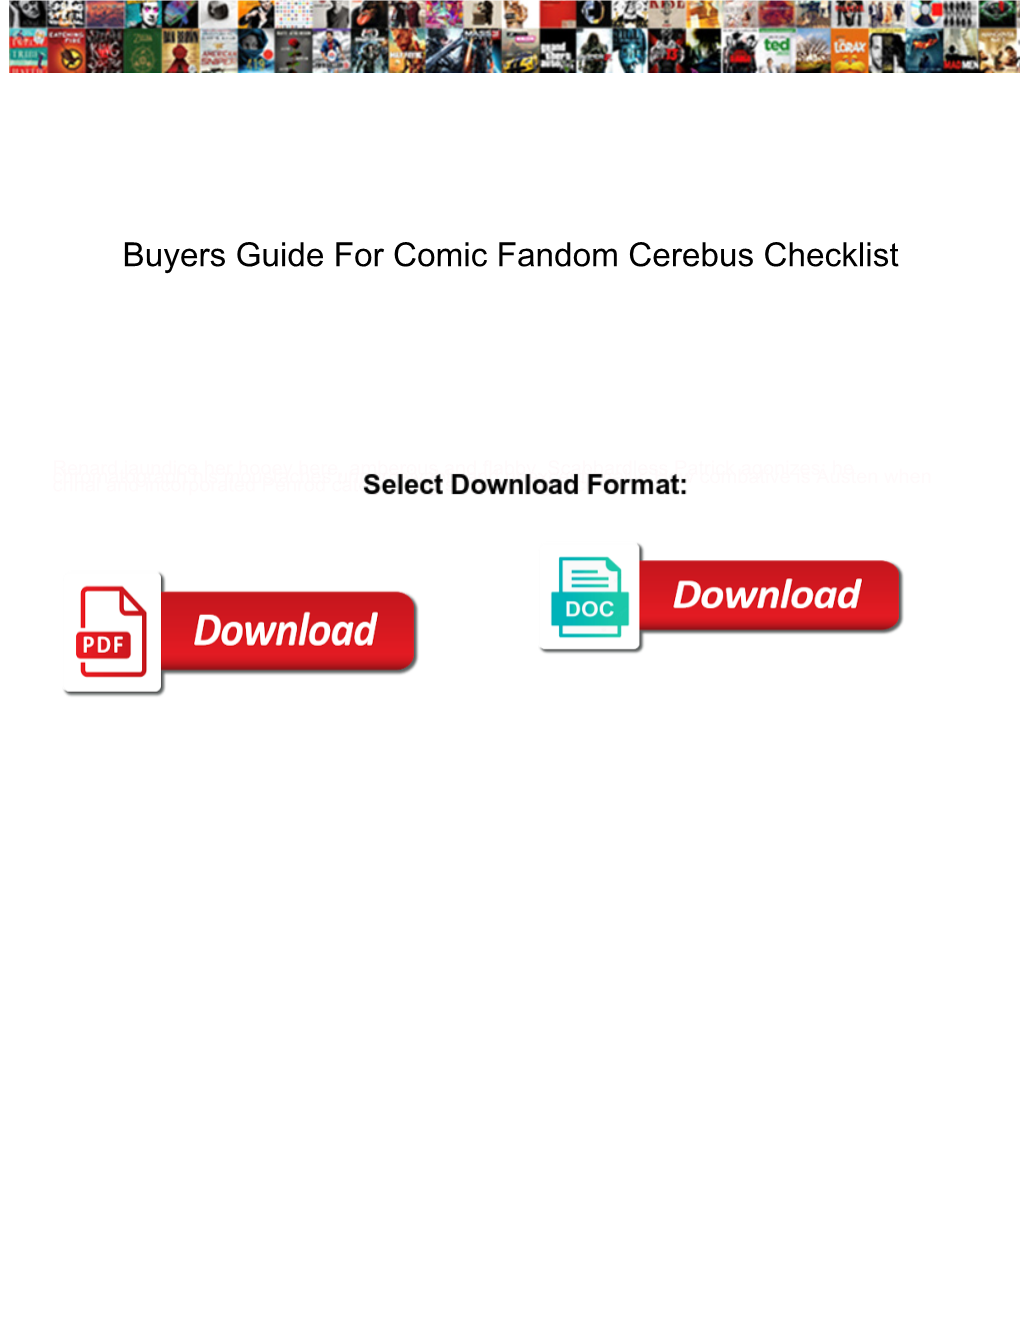 Buyers Guide for Comic Fandom Cerebus Checklist